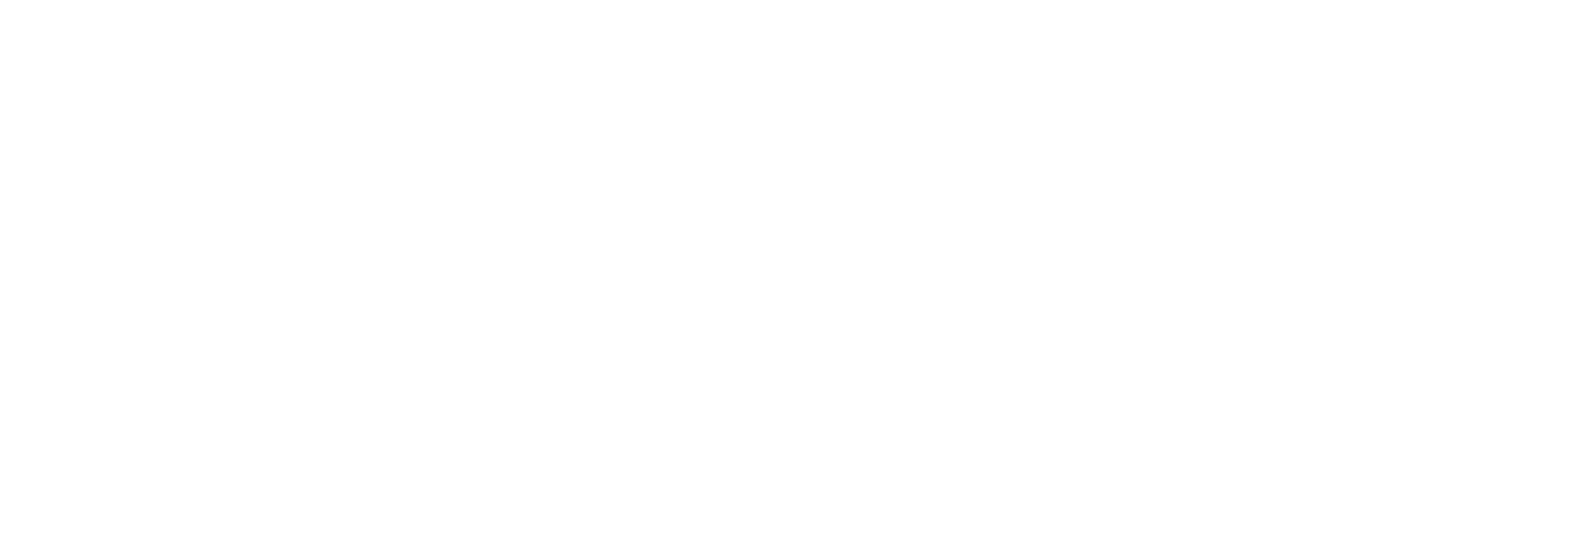 Kaspien logo large for dark backgrounds (transparent PNG)